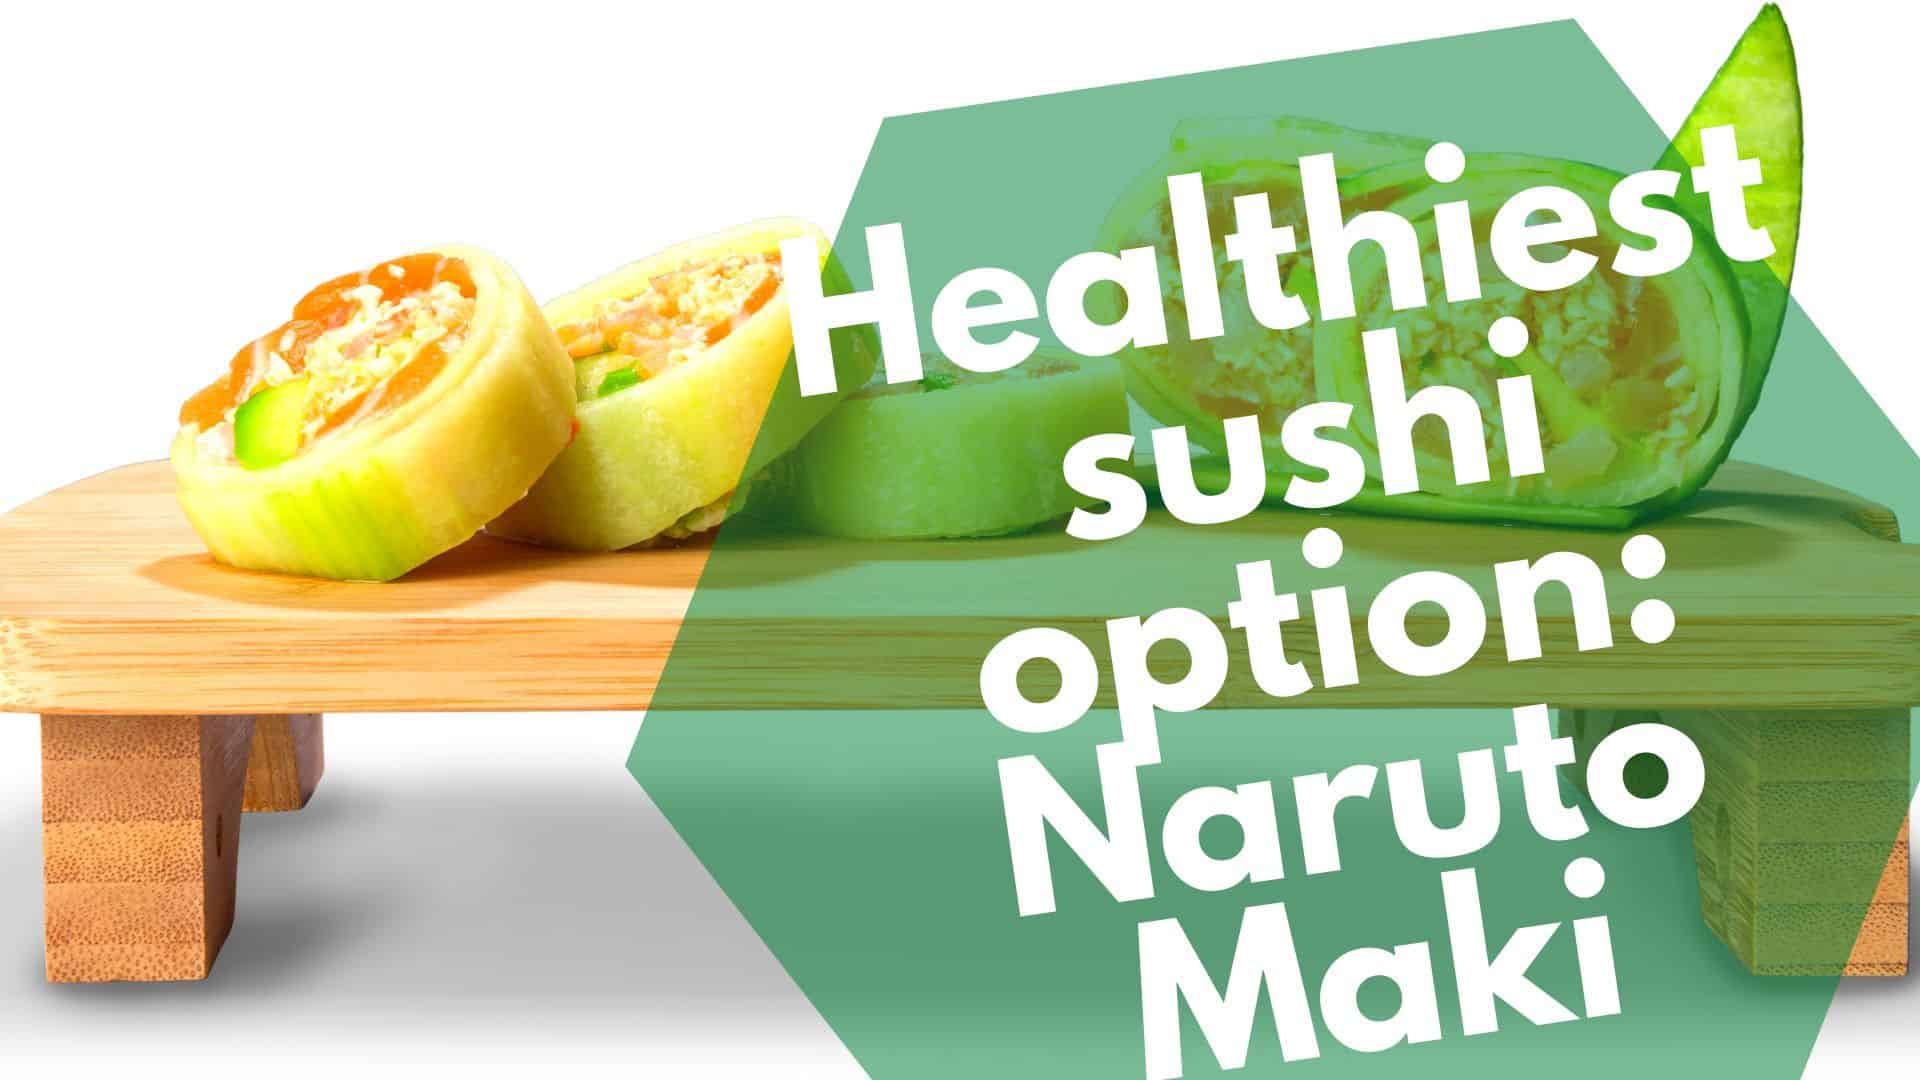 La opción de sushi más saludable: Naruto Maki